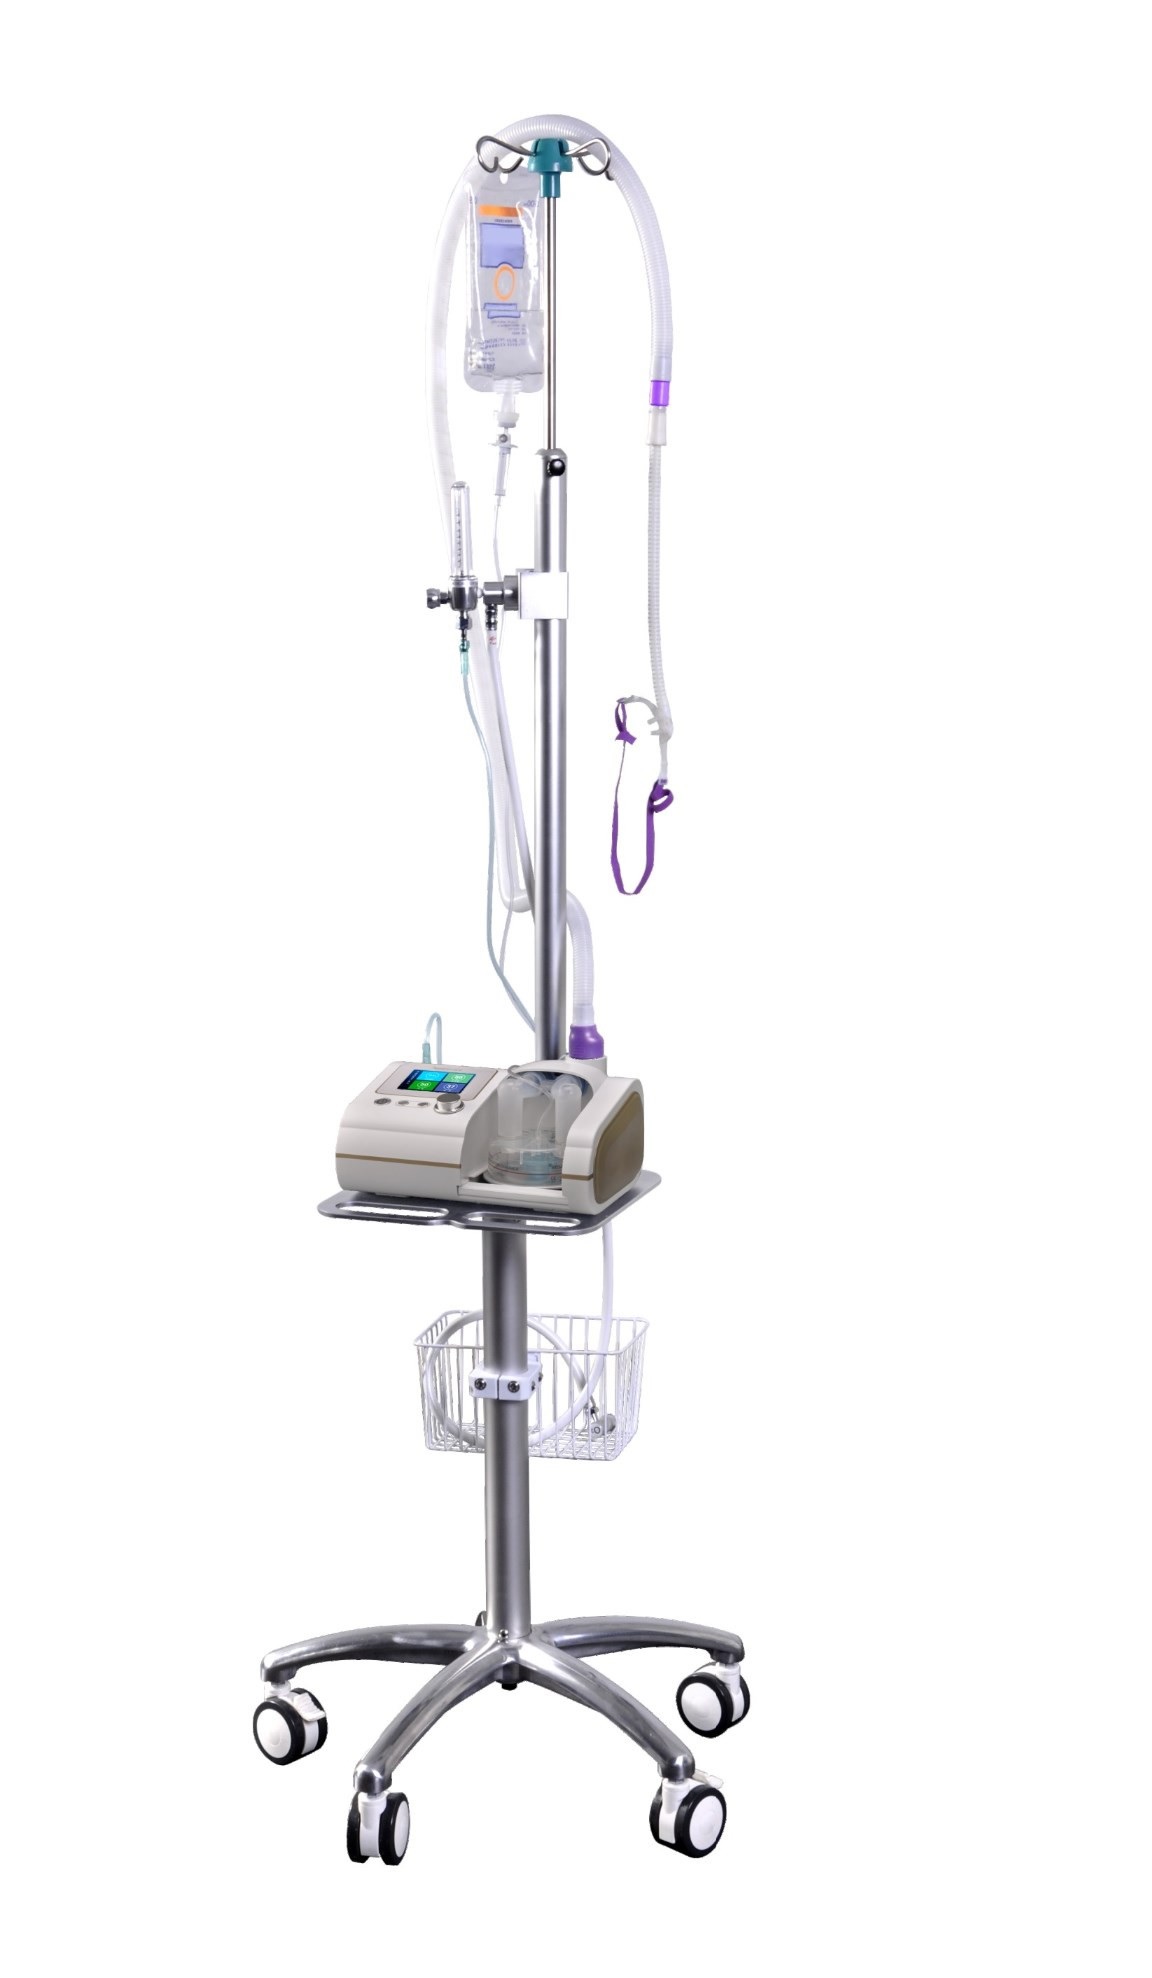 Máy tạo Ôxy dòng cao / Máy thở oxy làm ẩm dòng cao qua canun mũi trong điều trị bệnh nhân suy hô hấp cấp; dùng để hút đàm nhớt; nội soi khí phế quản và đặt nội khí quản (HFNO; HFNC)